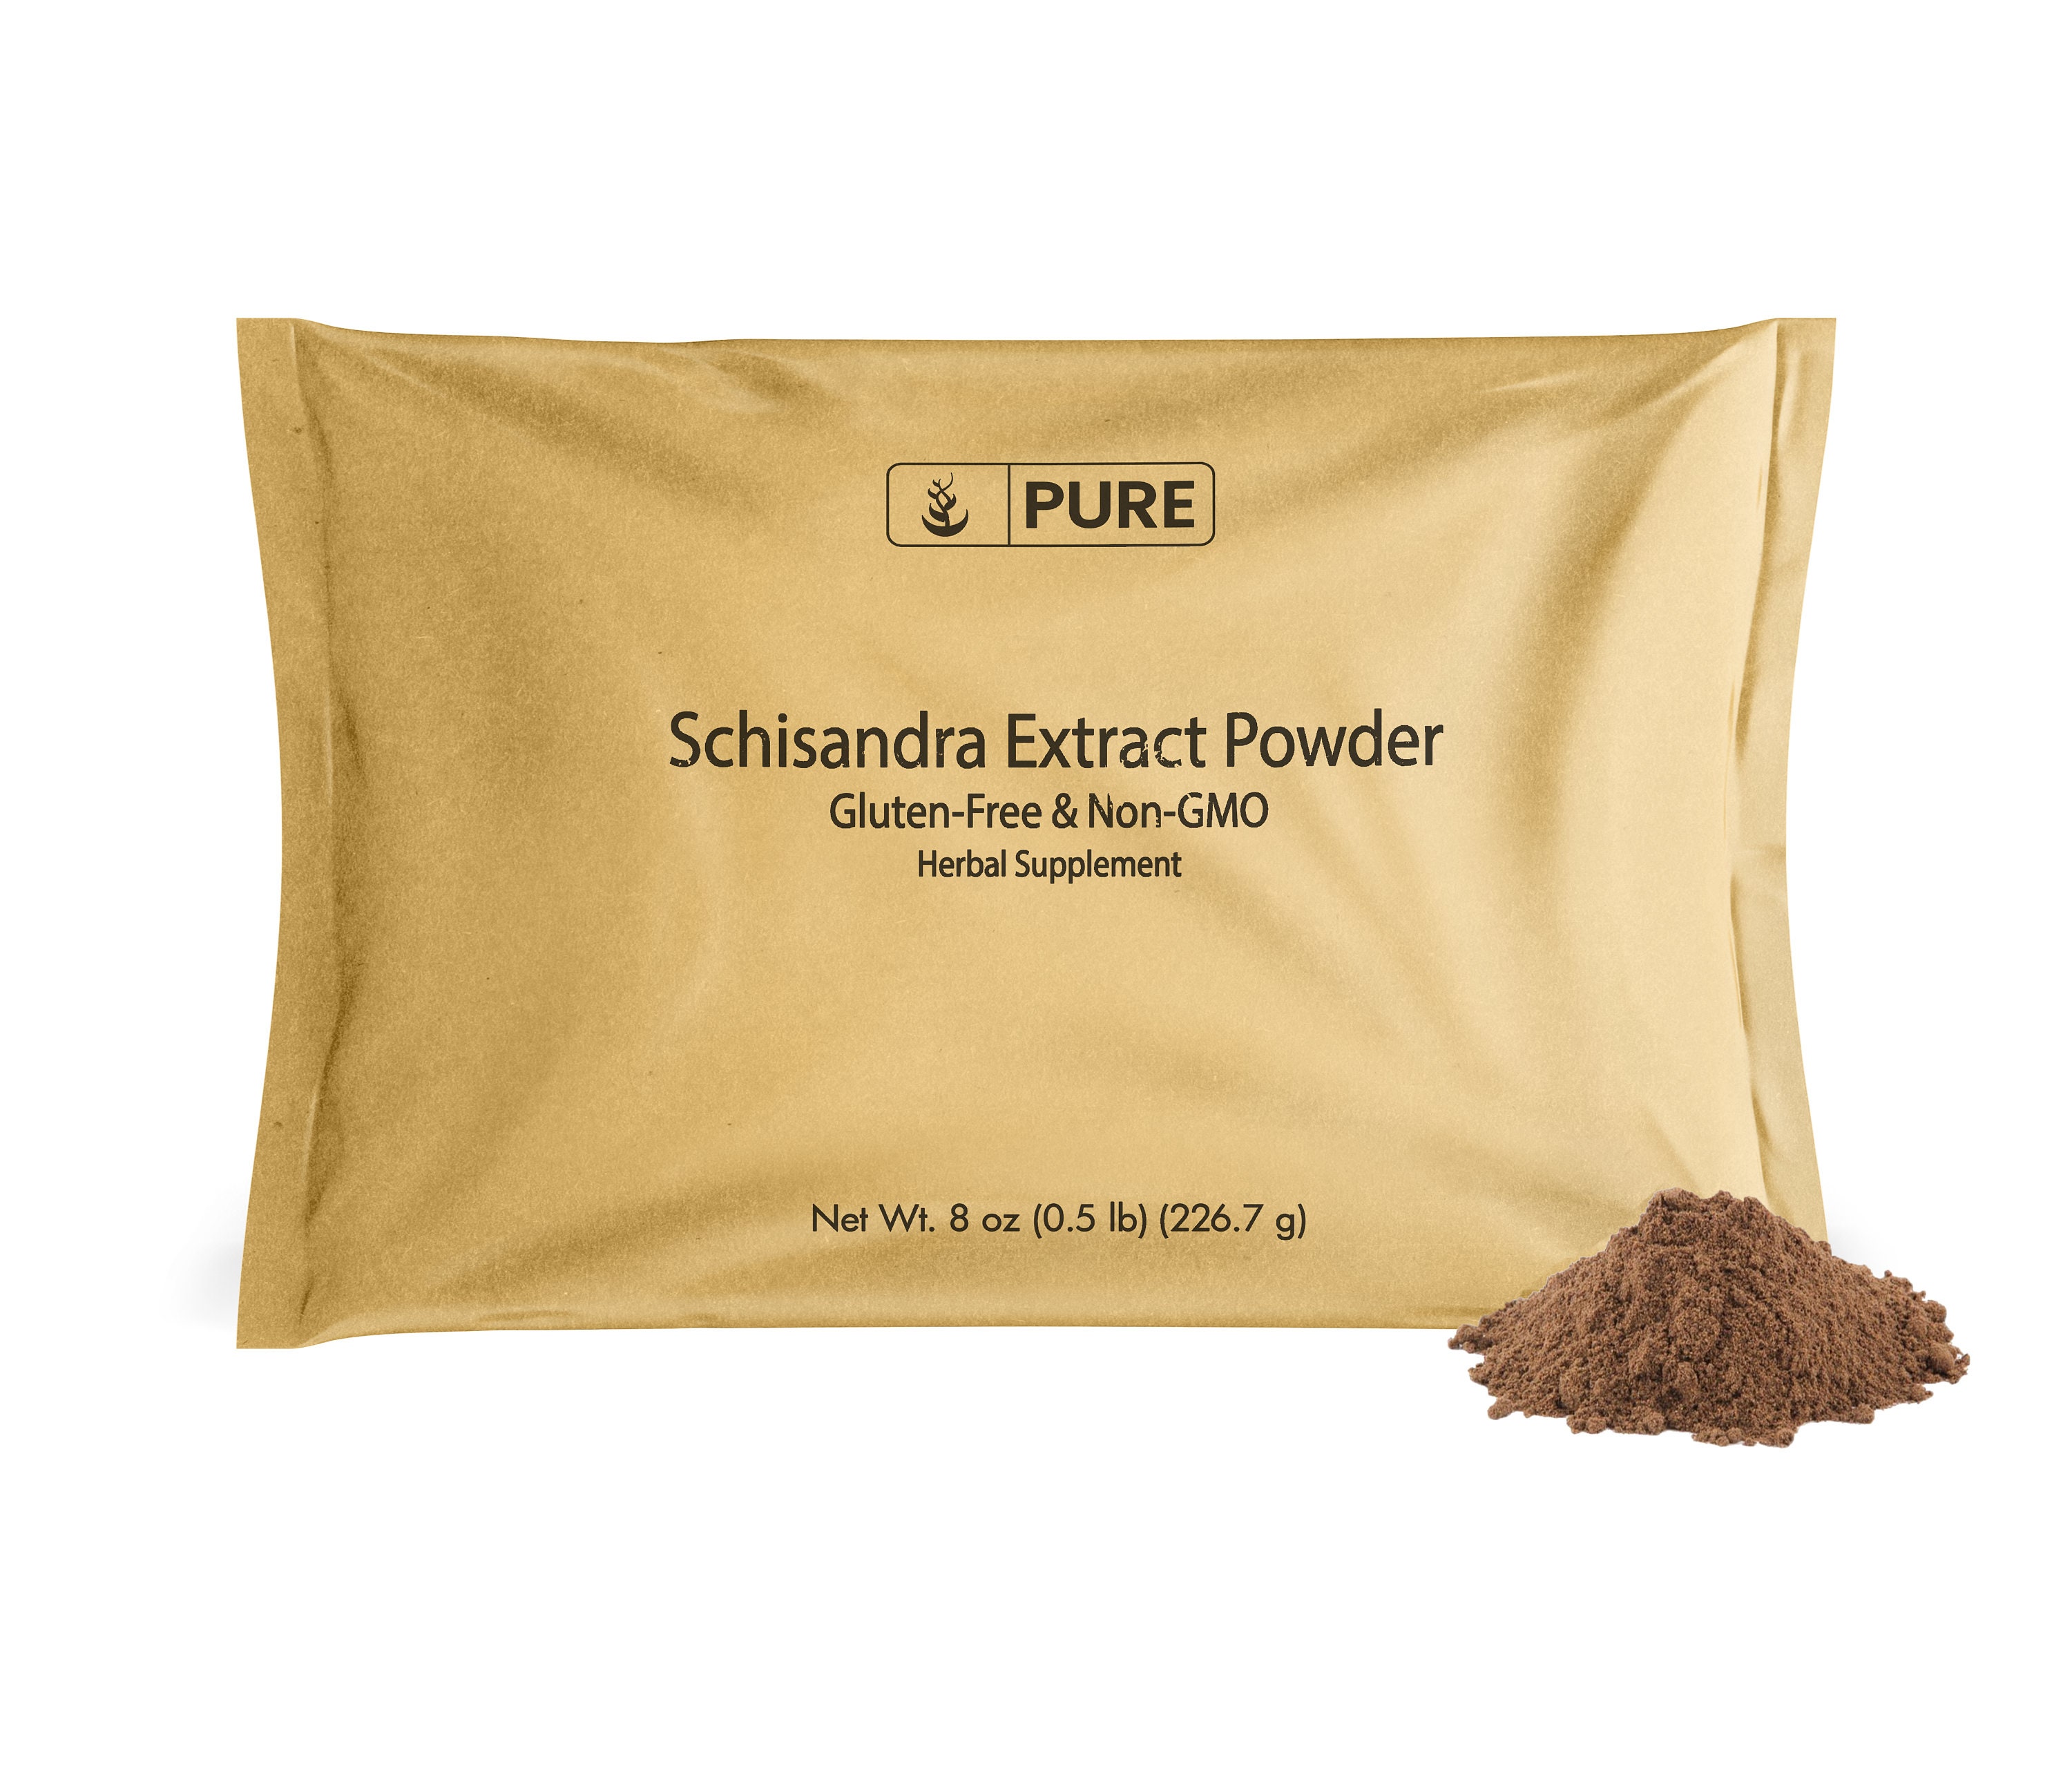 Schisandra Extract Powder 8 Oz - Etsy